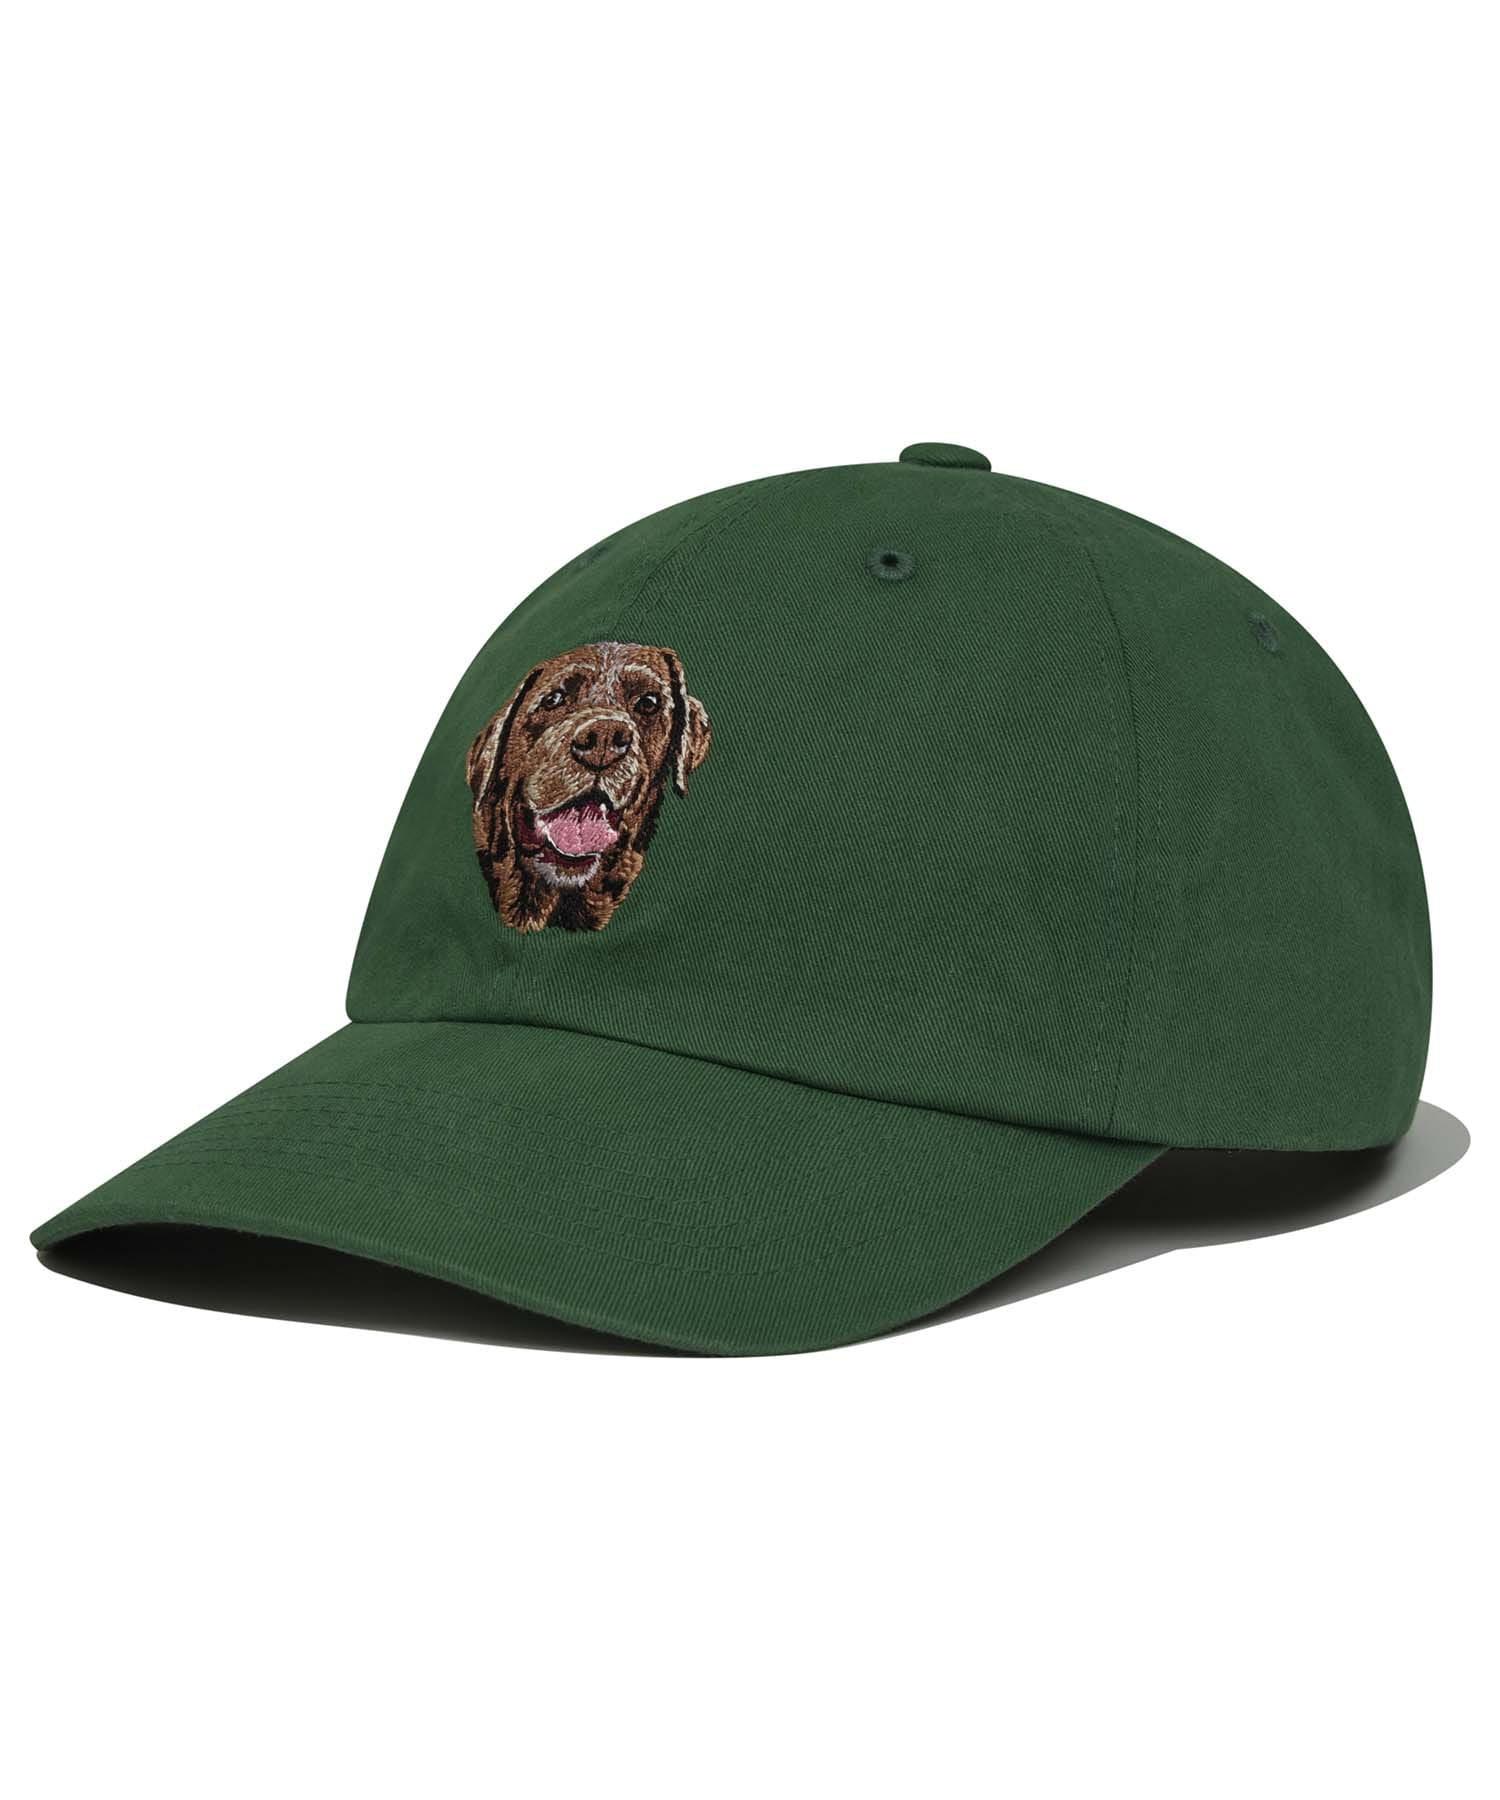 CHOCO LAB BALL CAP [GREEN]